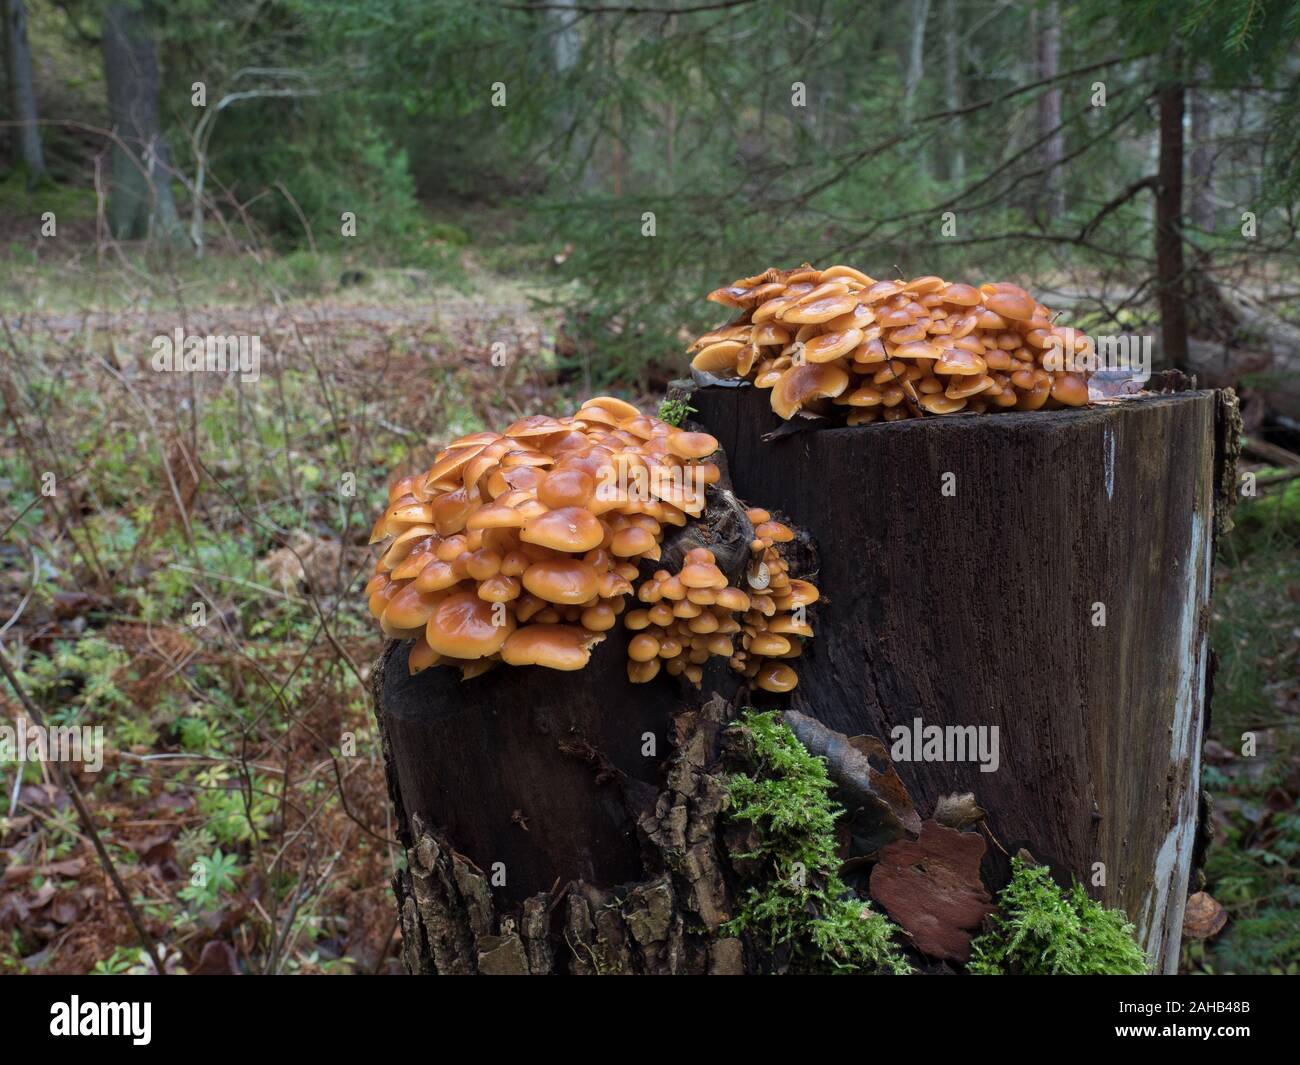 Pied velouté aussi connu sous le nom de champignons champignons d'hiver (Colybie a) croissant dans Görvälns naturreservat, Järfälla, Suède Banque D'Images